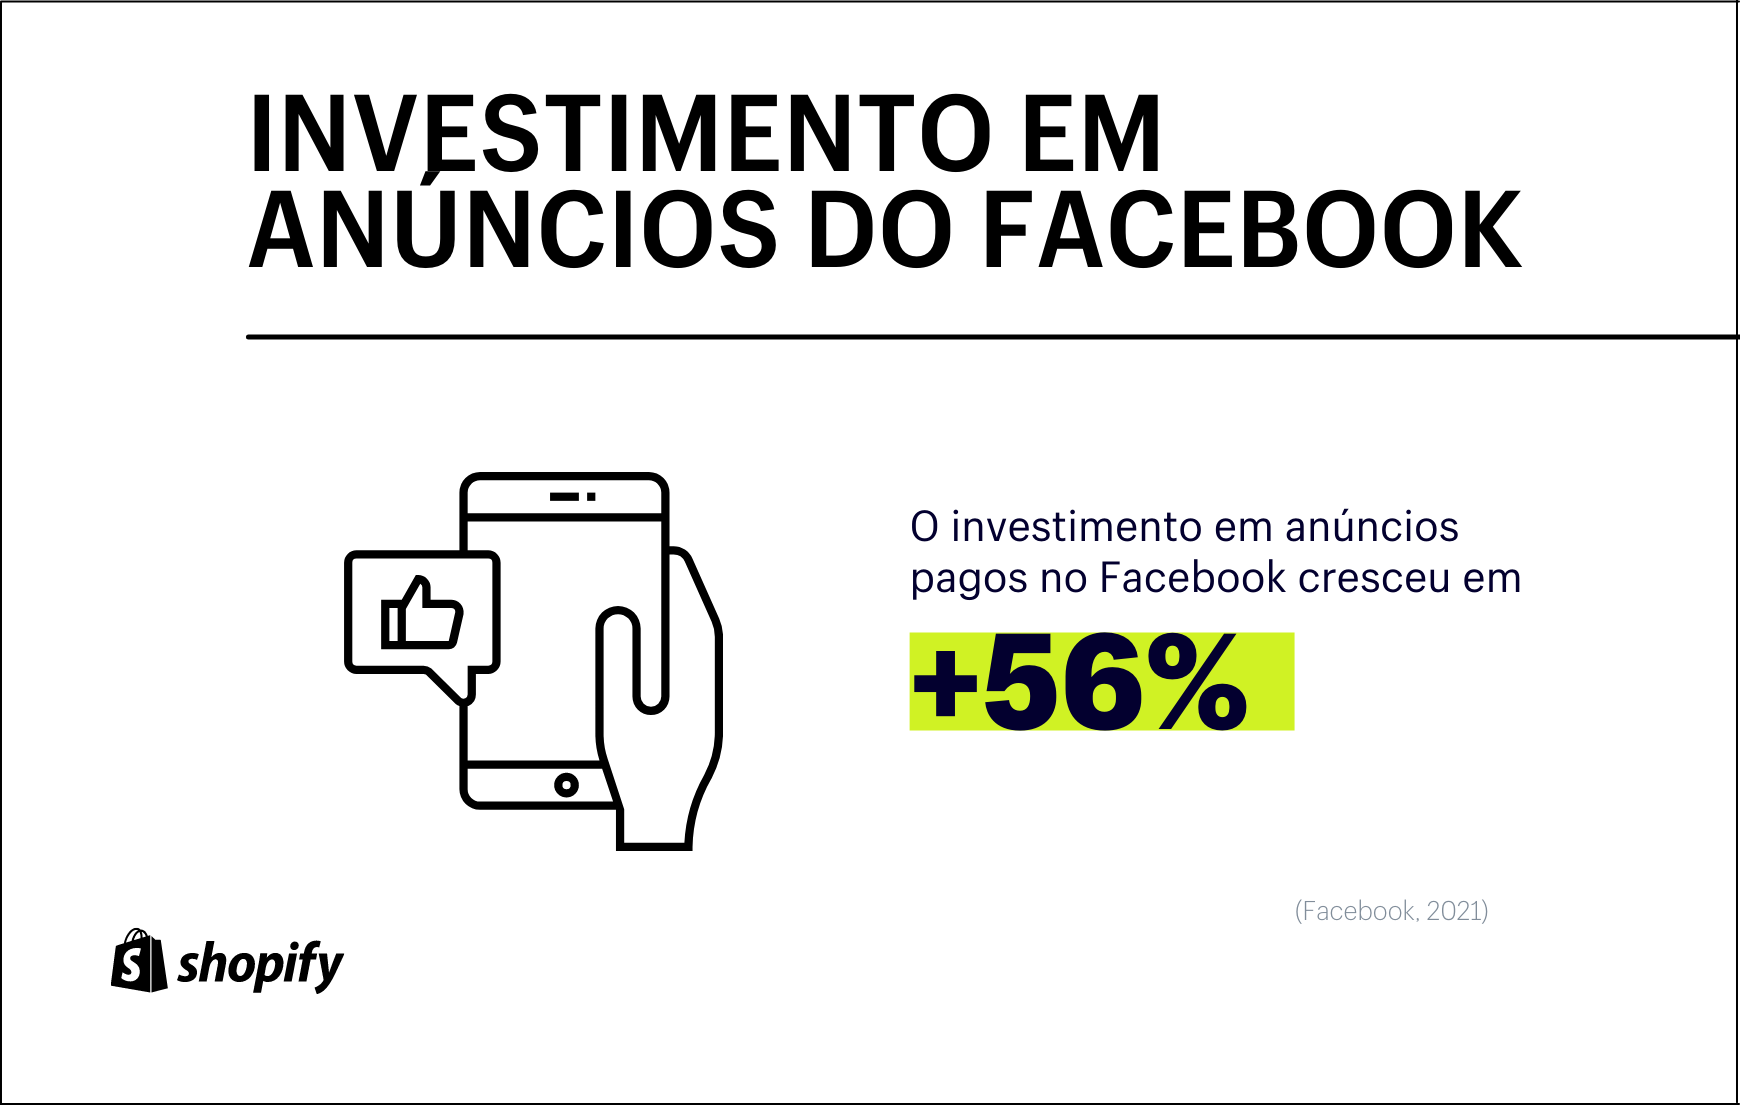 Infográfico de fundo branco e texto e imagens em preto e detalhes verde, onde há a informação de que o Facebook registrou um aumento de 56% de investimento em anúncios na plataforma